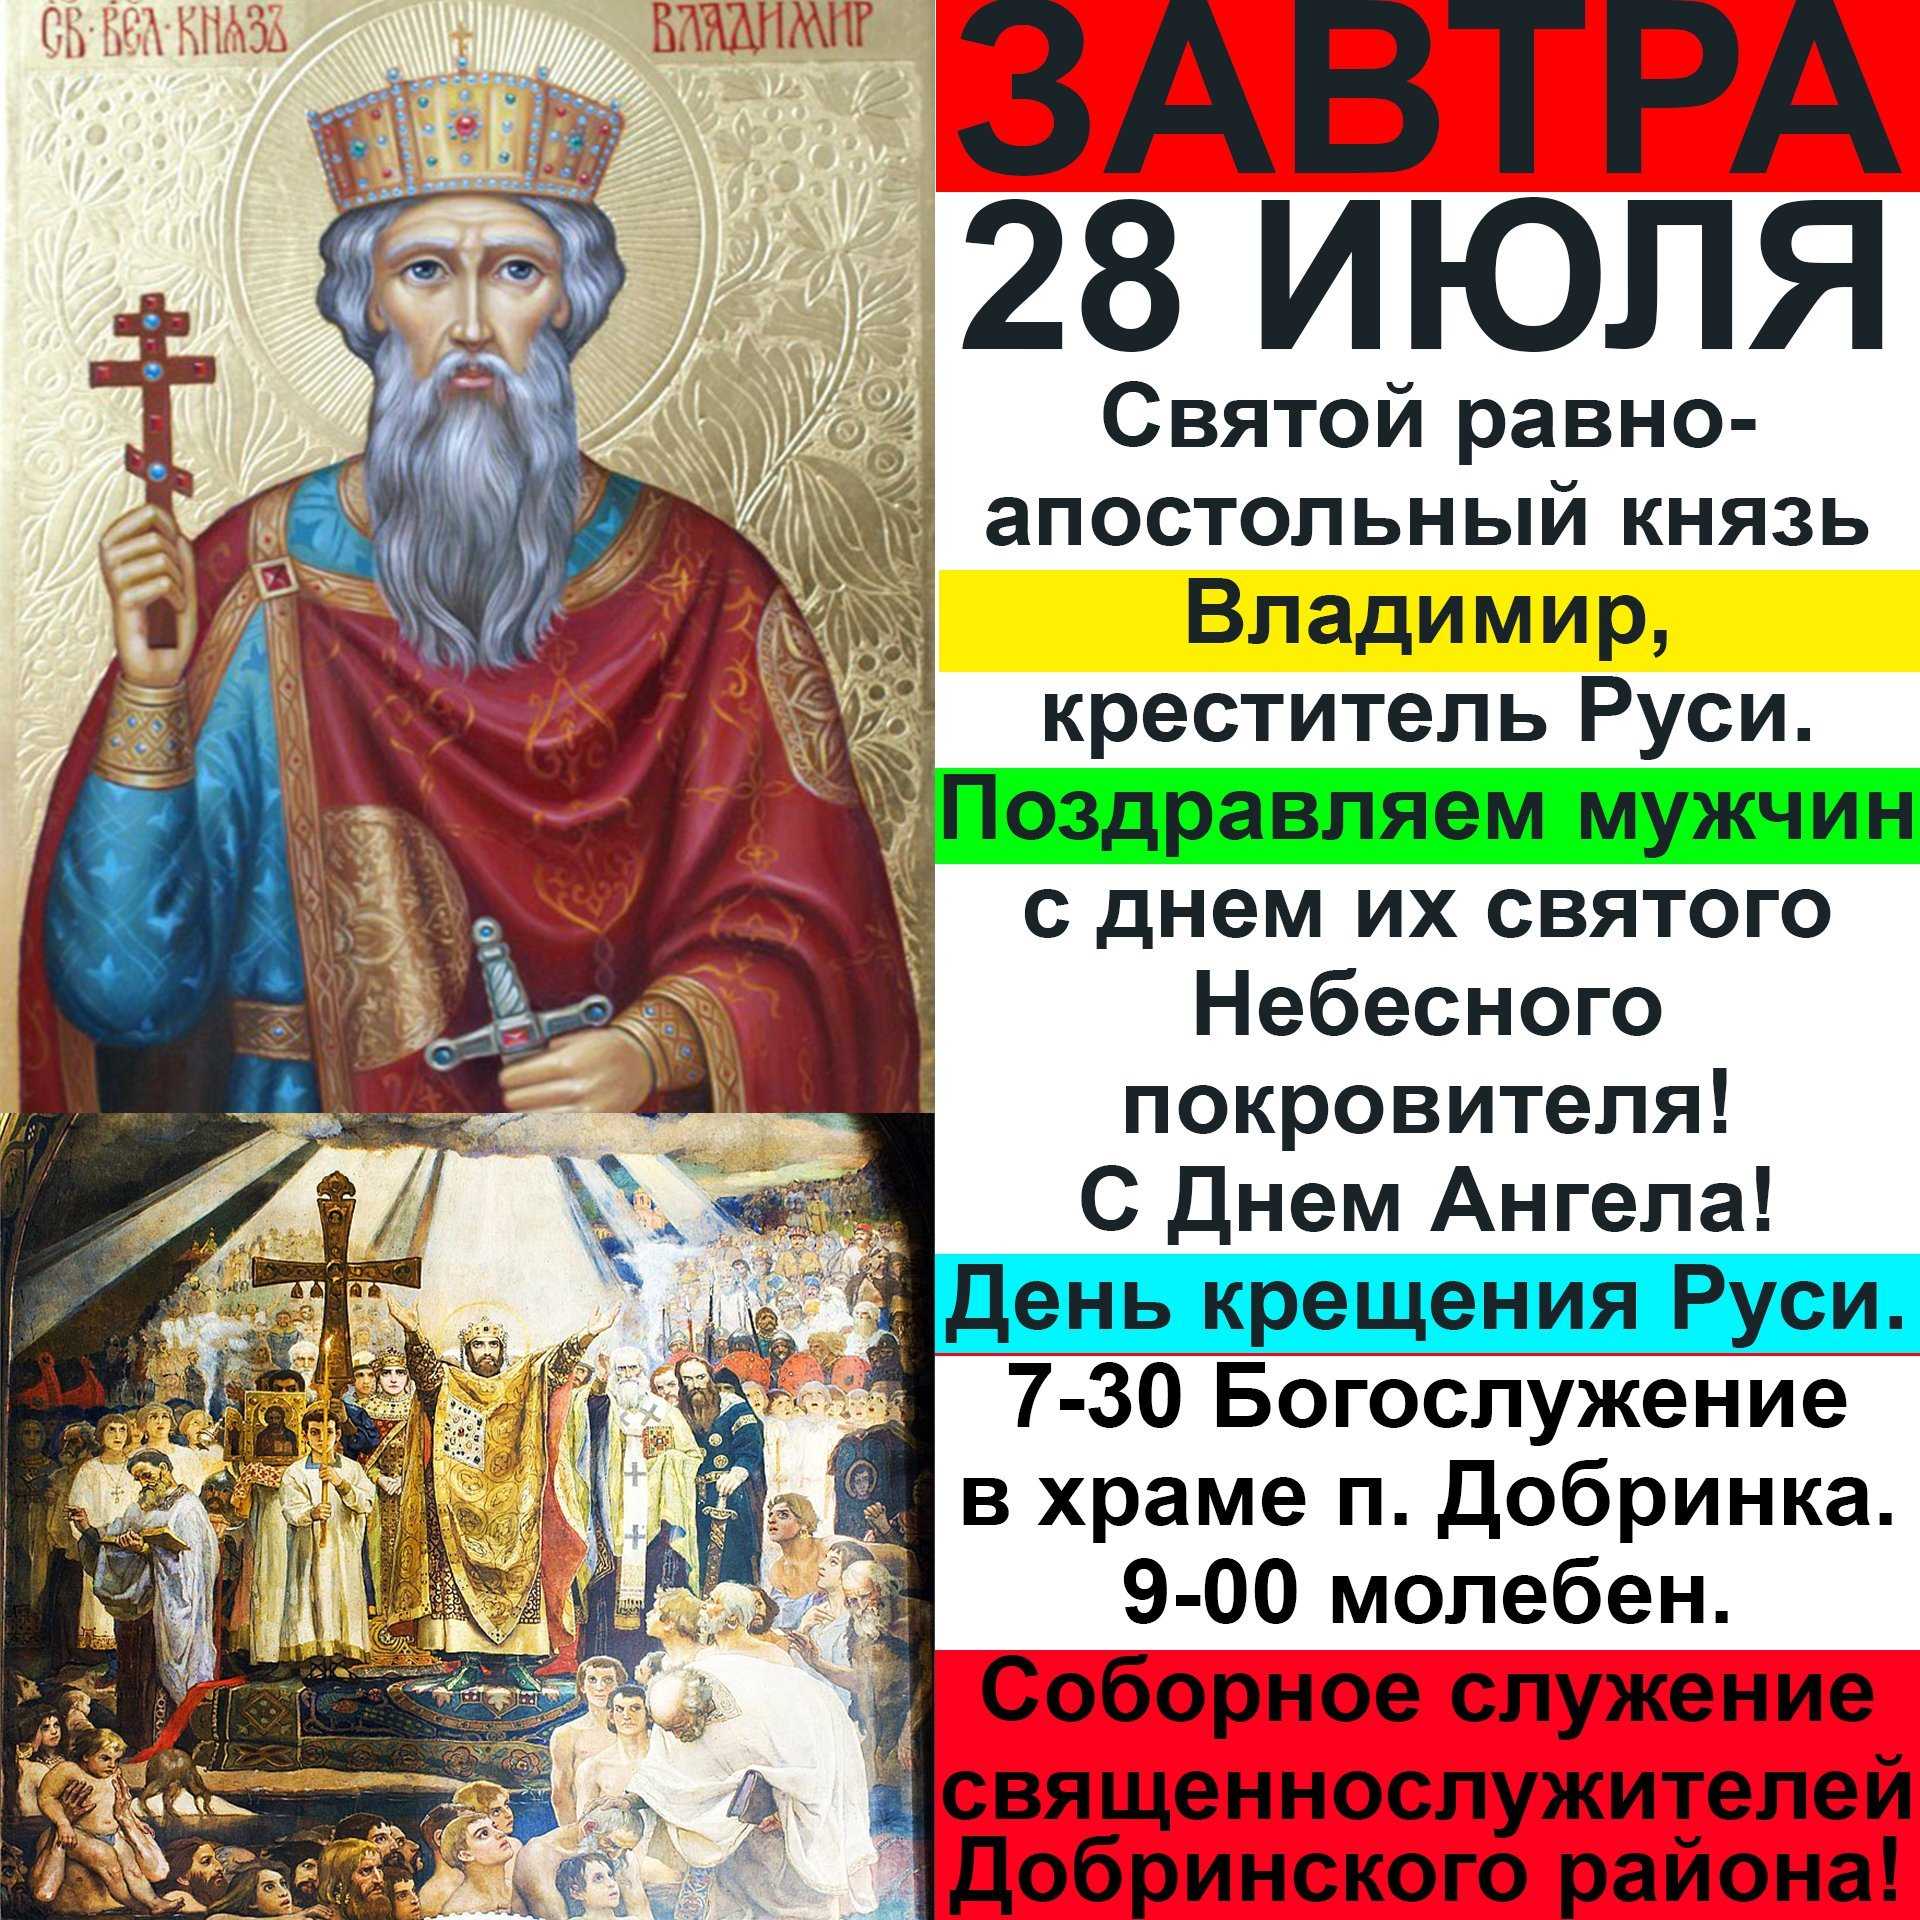 Именины владимира по церковному календарю • православный портал — моё небо